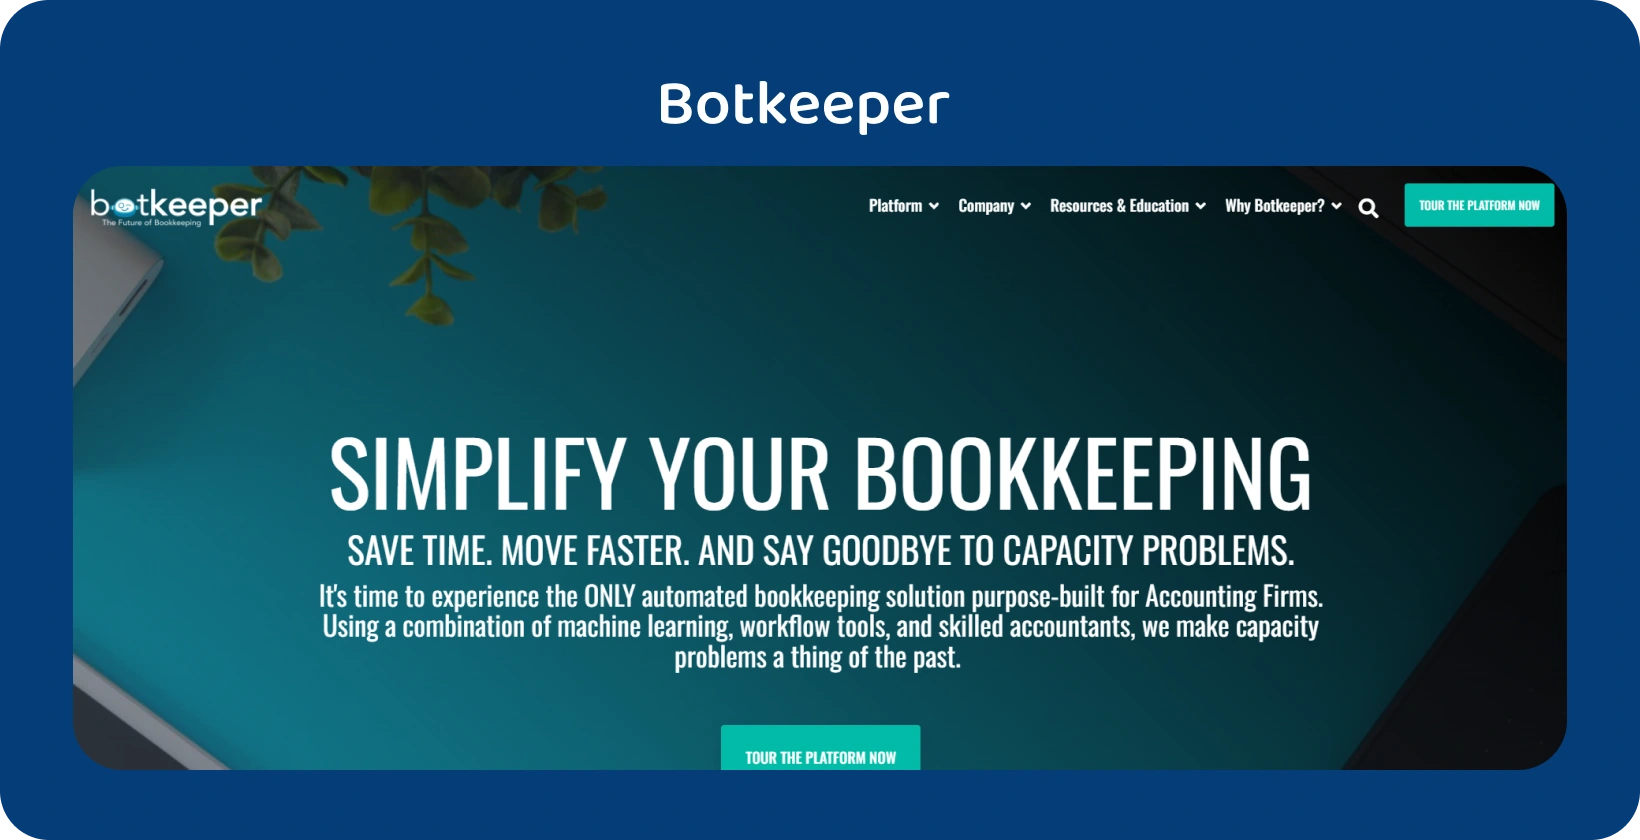 דף הבית של Botkeeper מדגיש את פישוט הנהלת החשבונות עבור רואי חשבון באמצעות טכנולוגיית האוטומציה שלה.